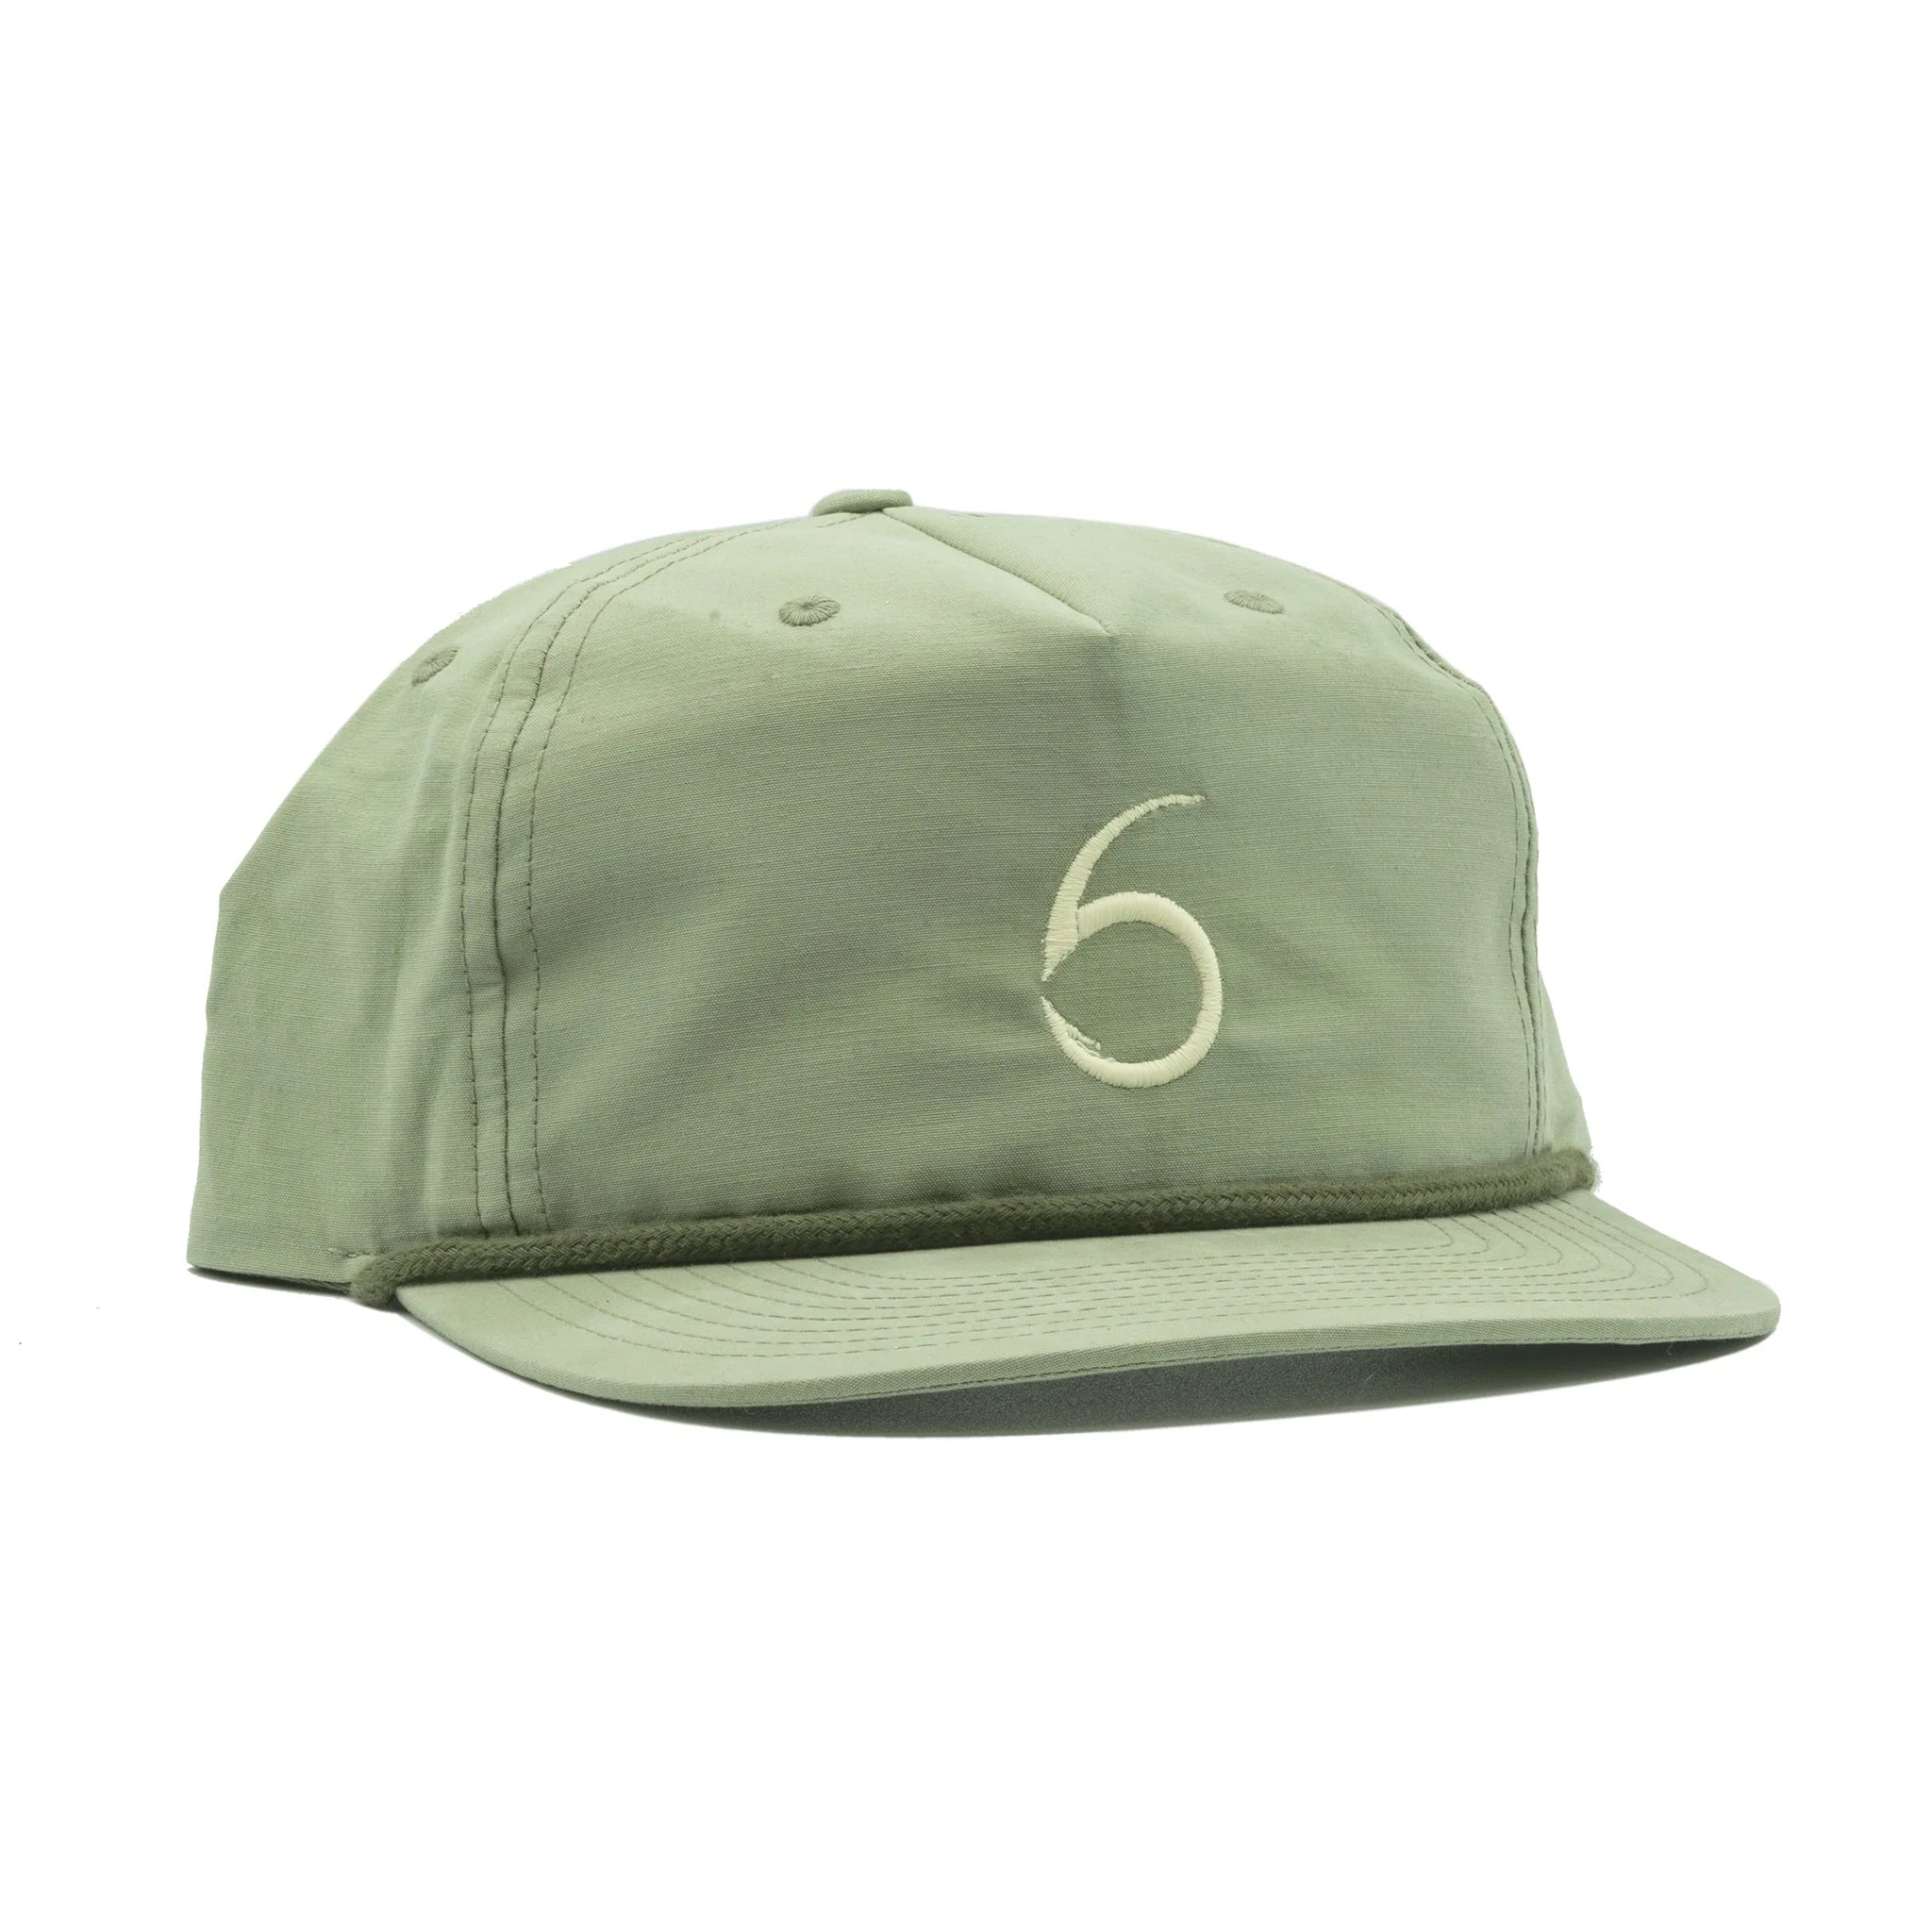 Buy old-timer-fishbones-sage-olive 6TH SENSE HATS